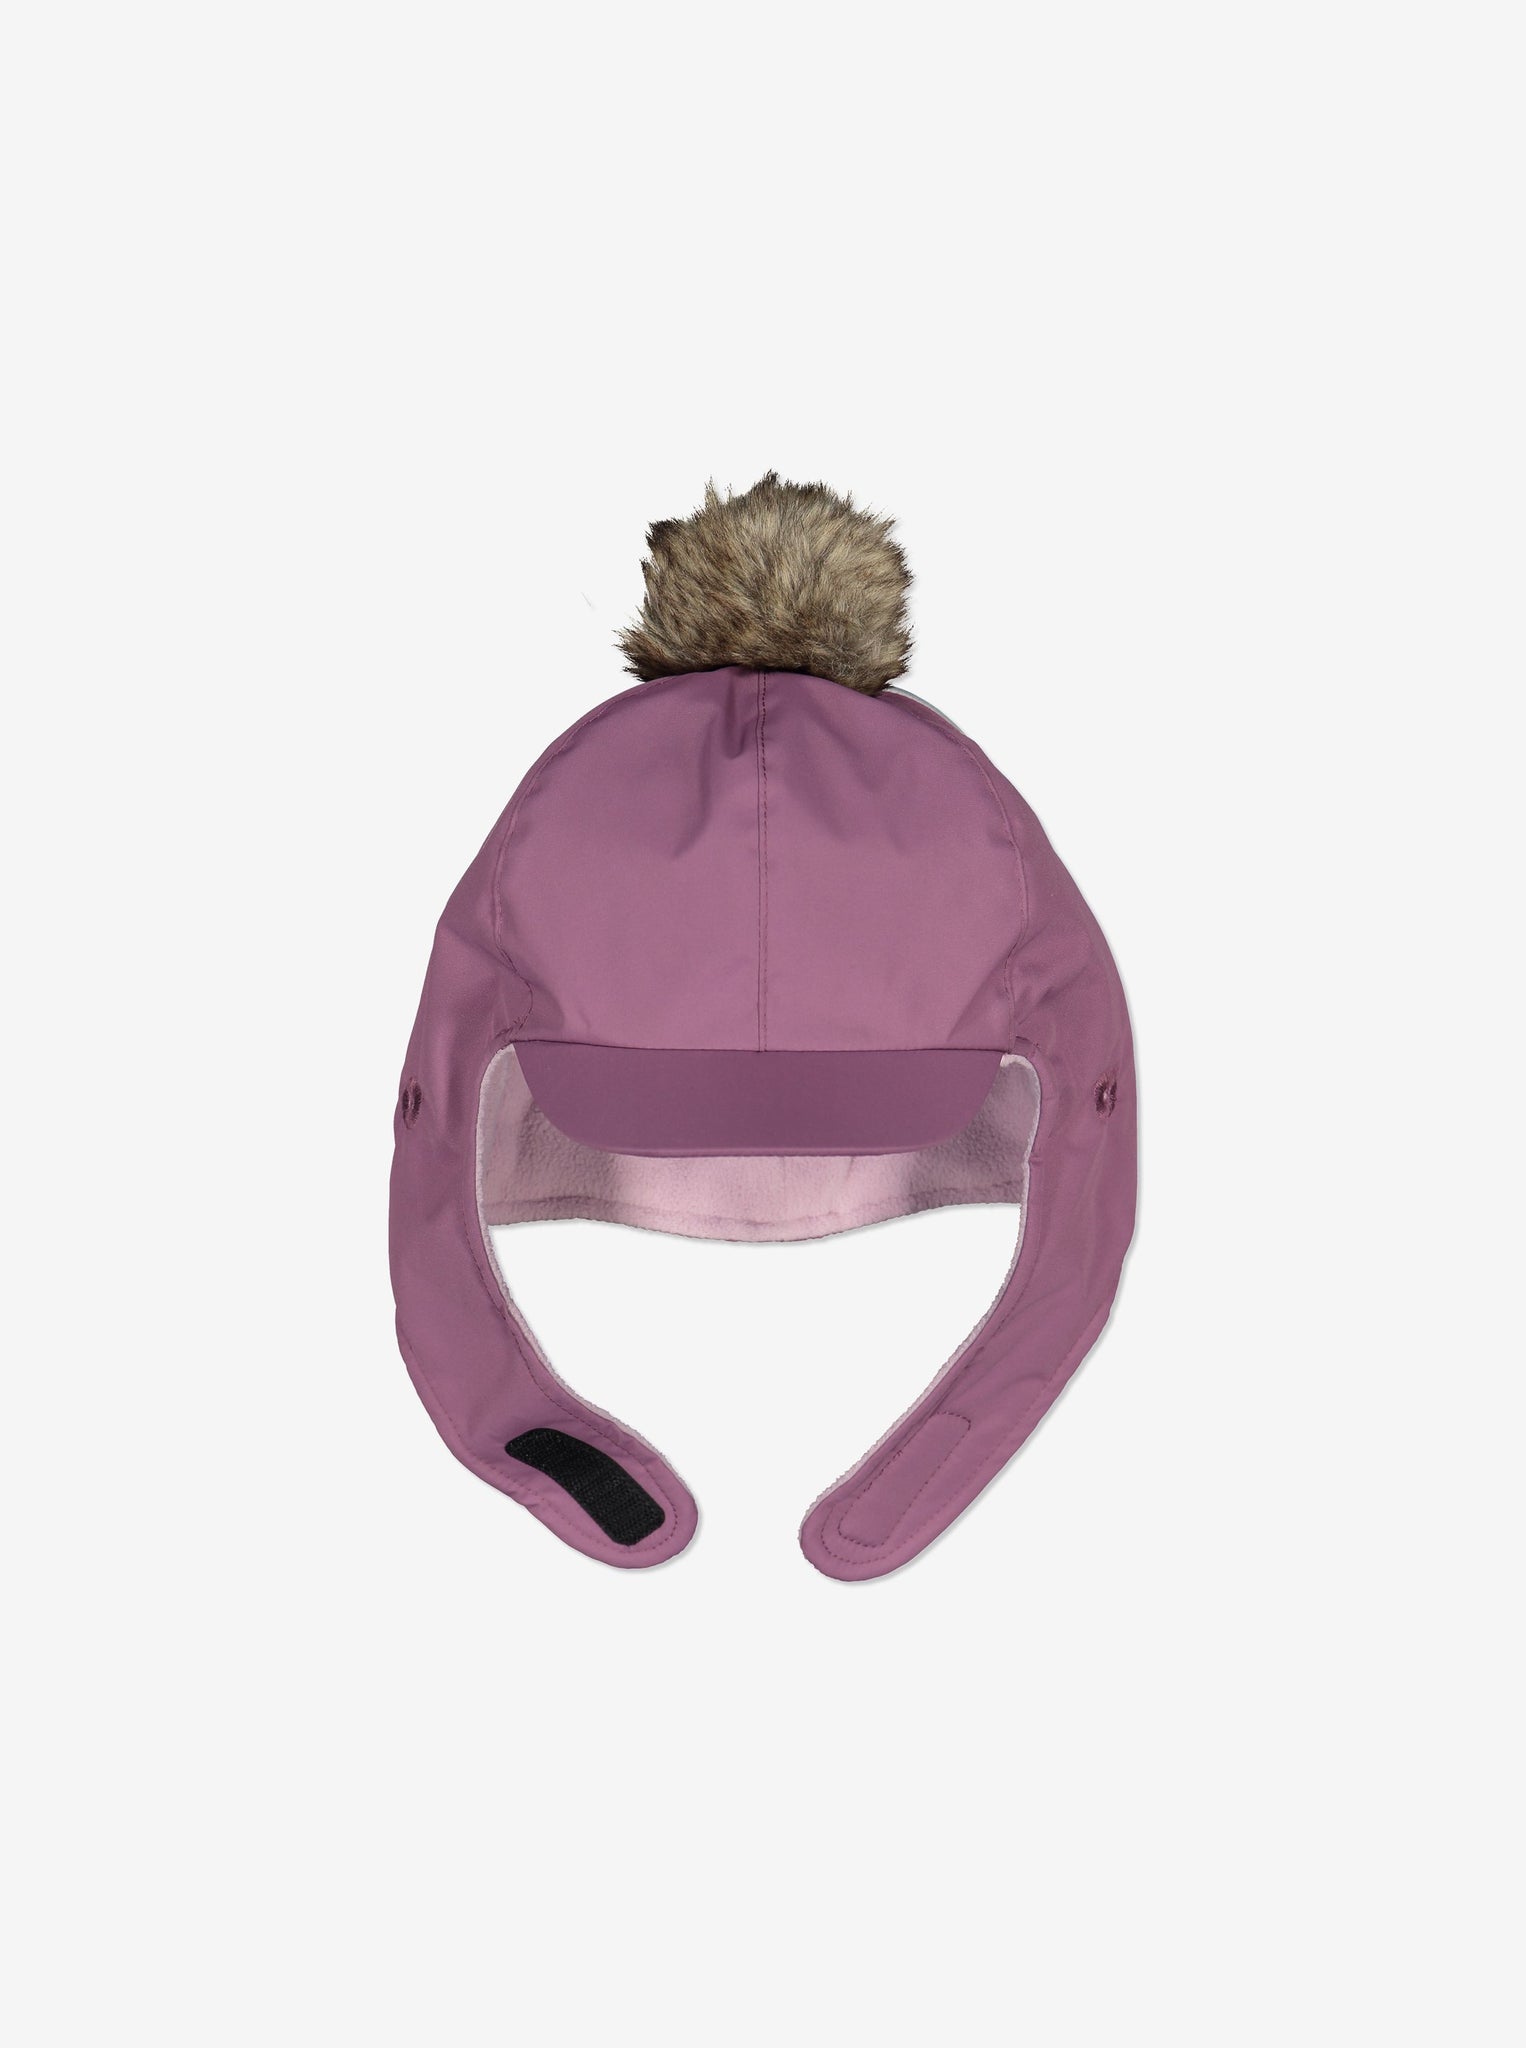 Waterproof Kids Bobble Hat-6m-2y-Purple-Girl